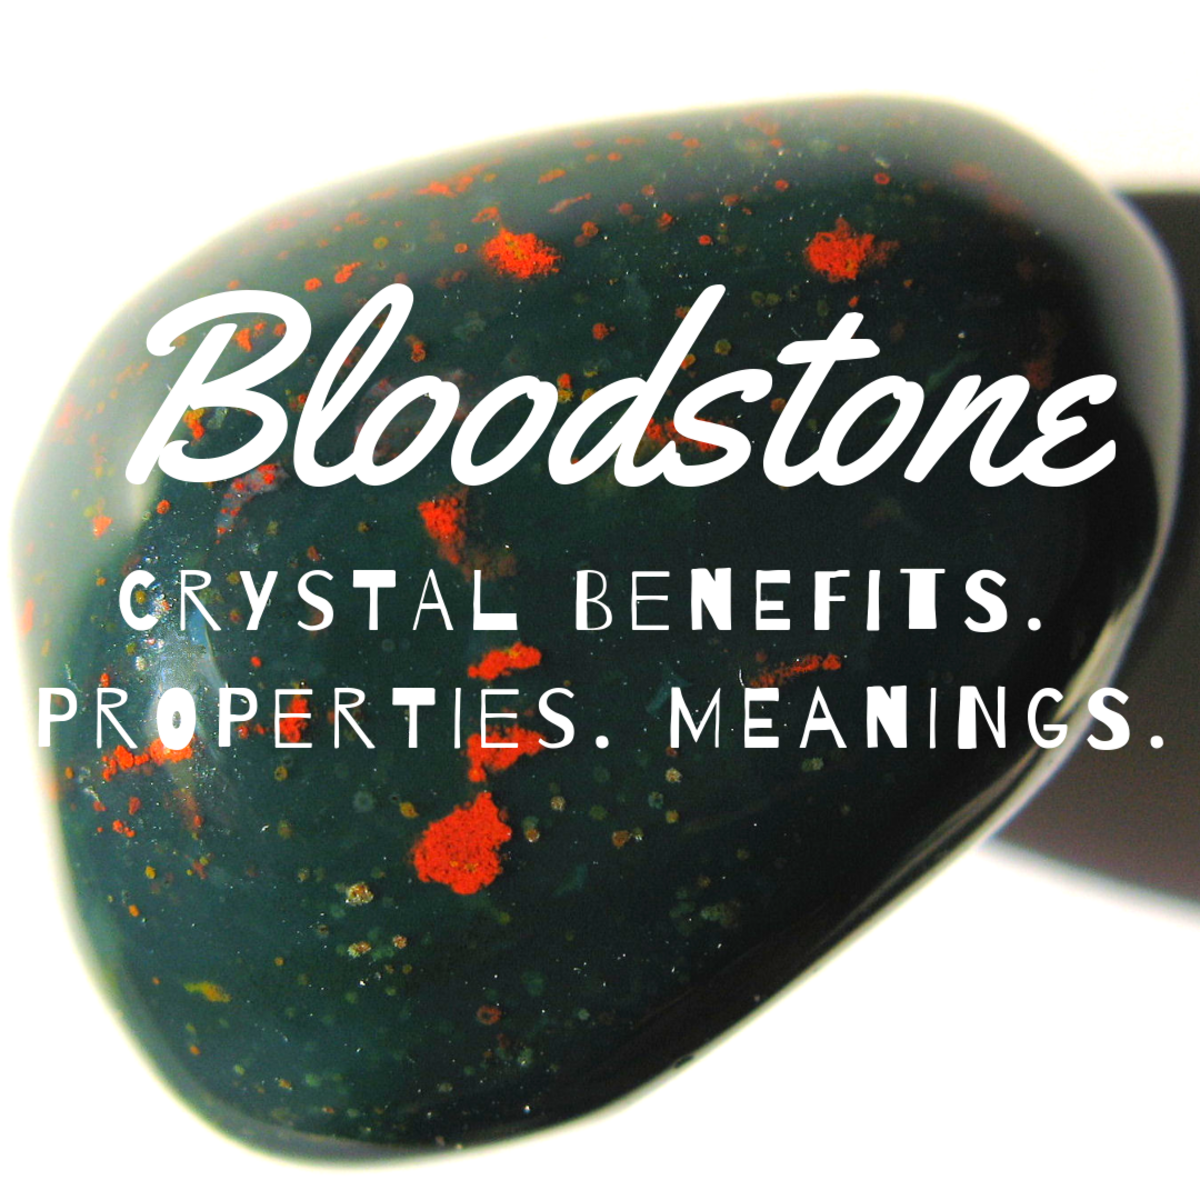 Bloodstone crystal properties.